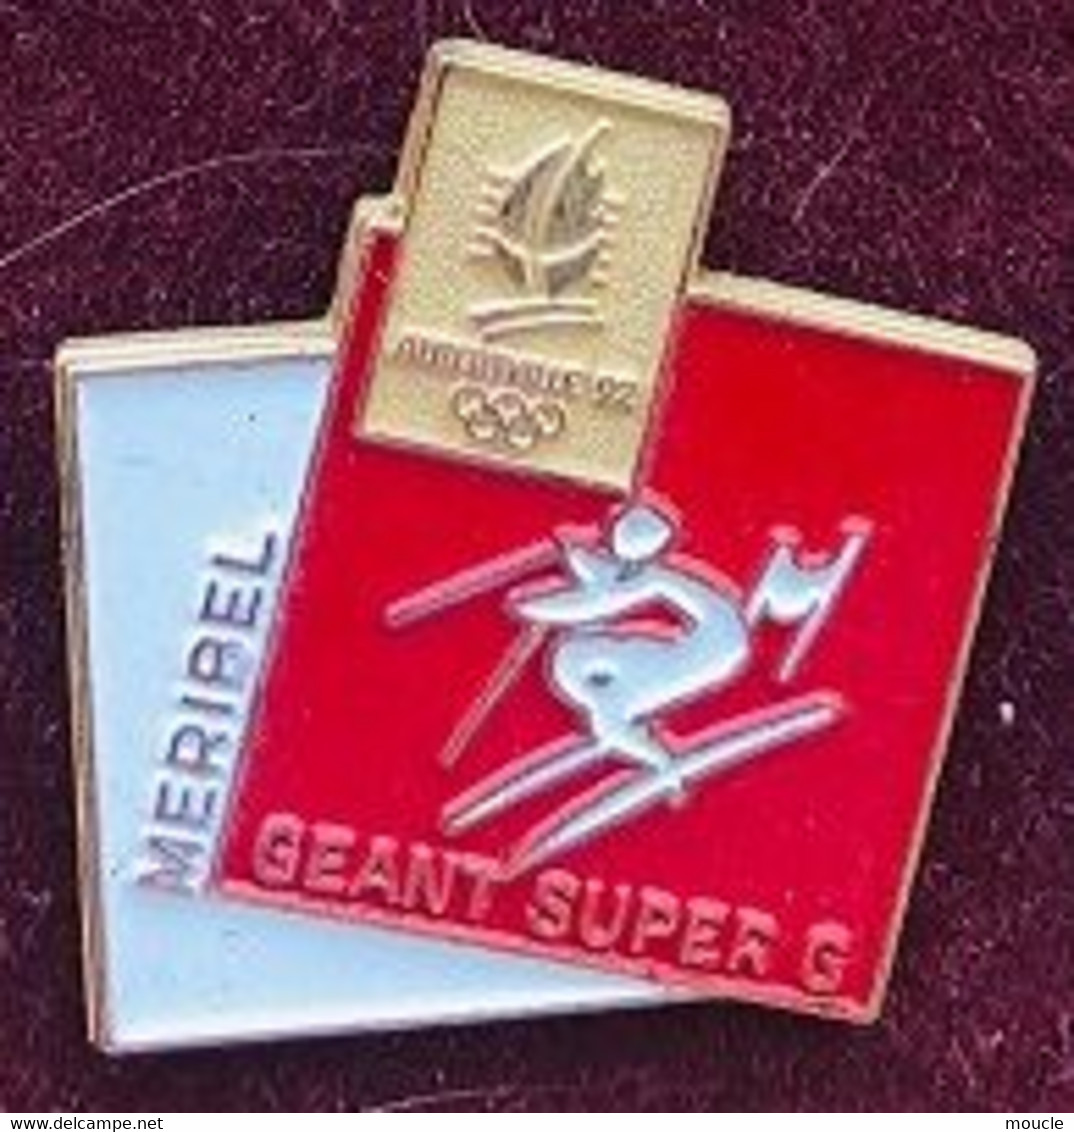 ALBERTVILLE 1992 / 92 - FRANCE - SITE MERIBEL - SKI - SLALOM GEANT - SUPER G - JEUX OLYMPIQUES - SAVOIE - ANNEAUX - (JO) - Juegos Olímpicos